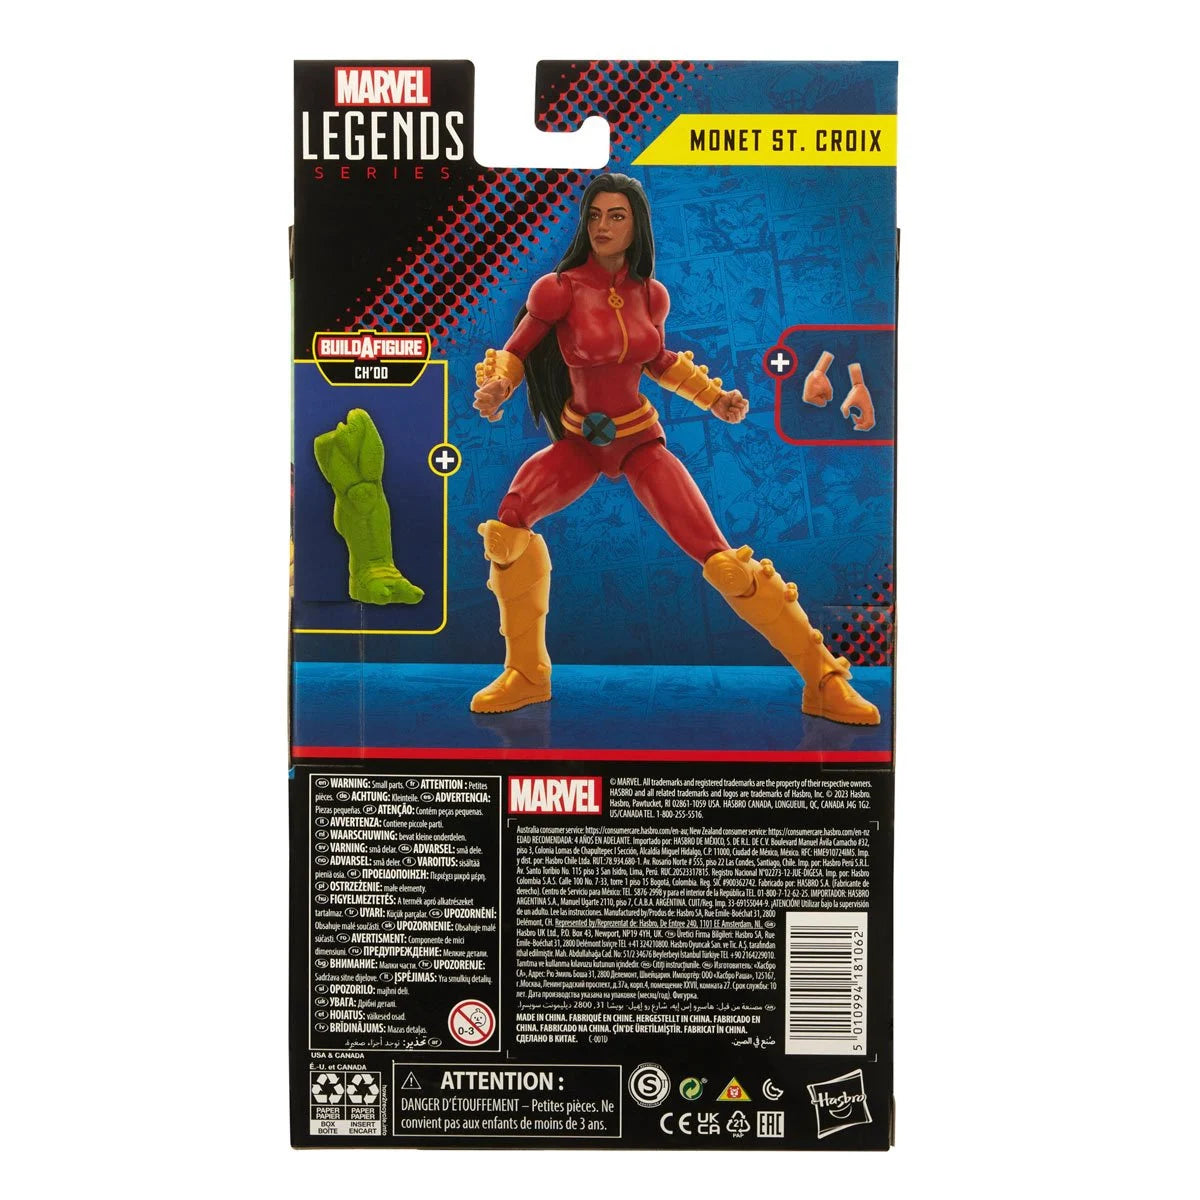  X-Men Marvel Legends Generation X Monet St. Croix 6-Inch Action Figure